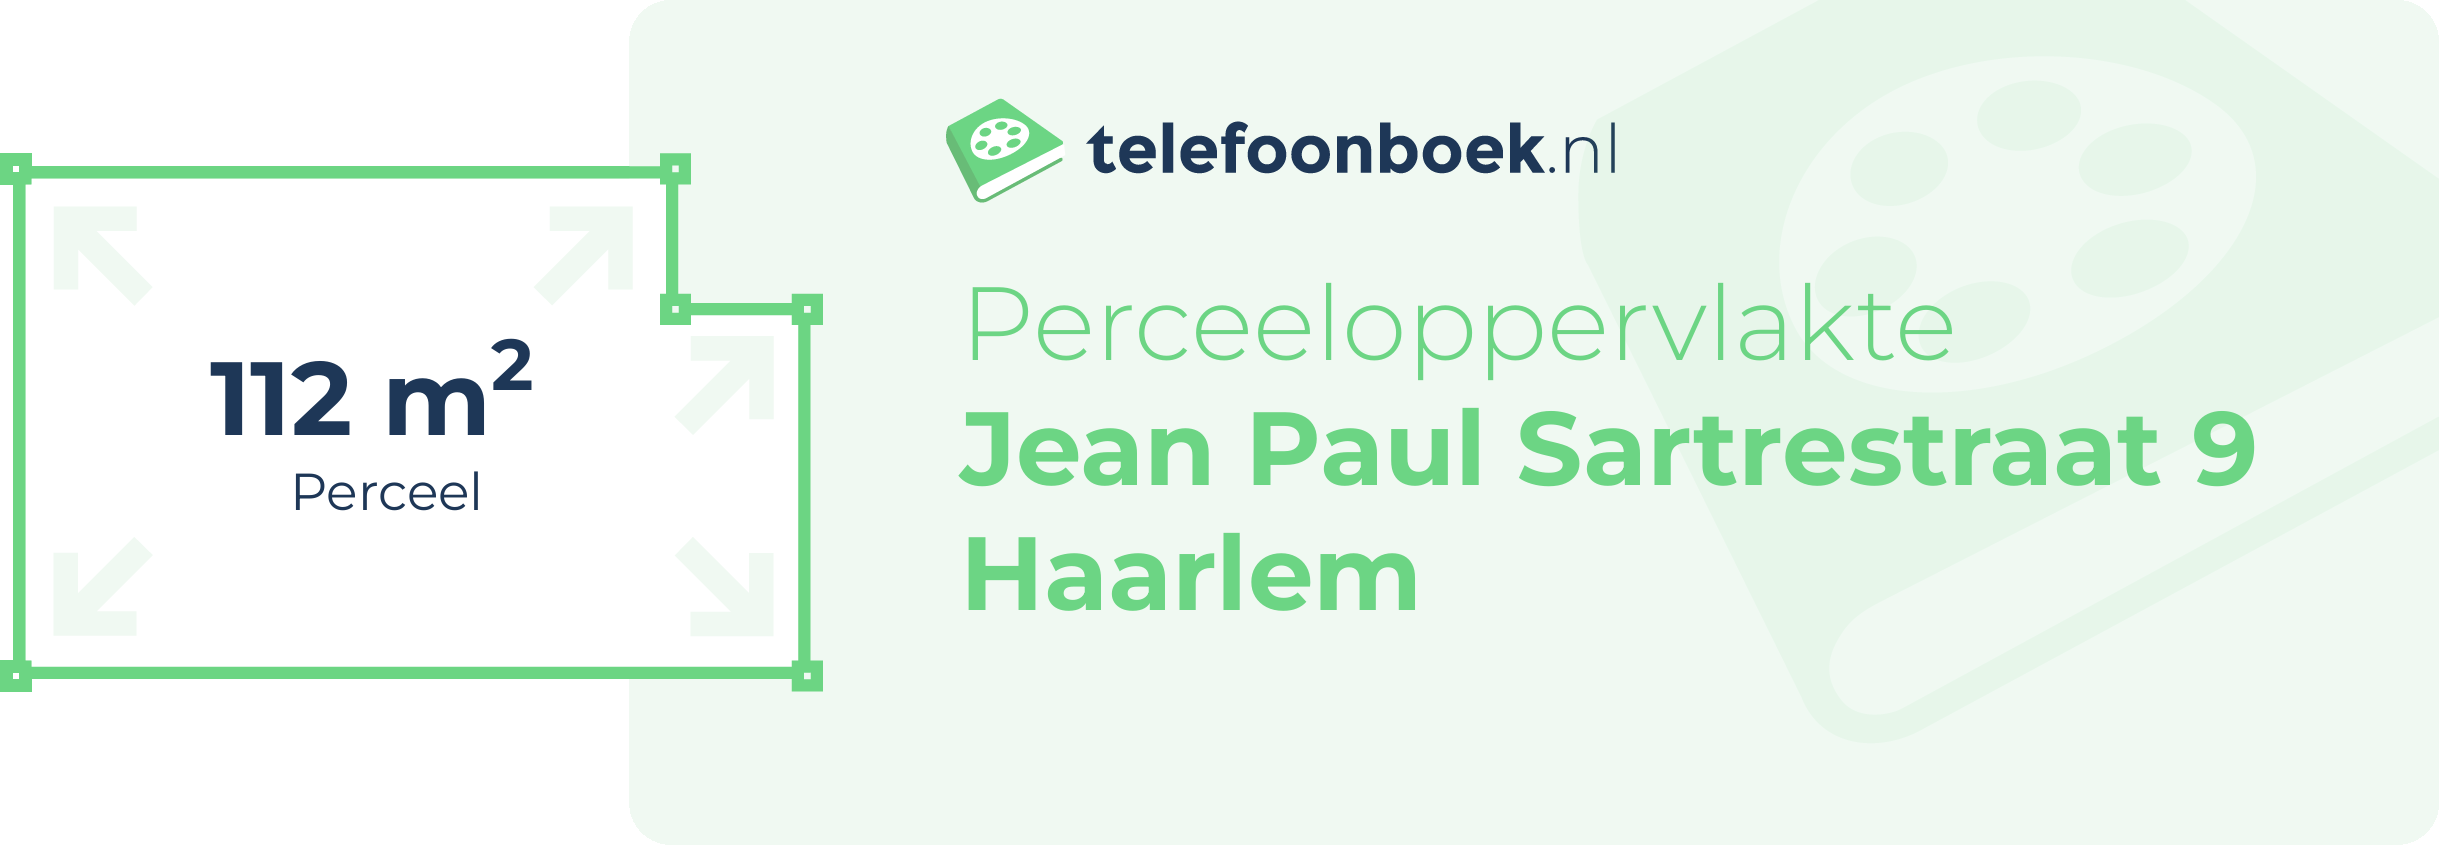 Perceeloppervlakte Jean Paul Sartrestraat 9 Haarlem